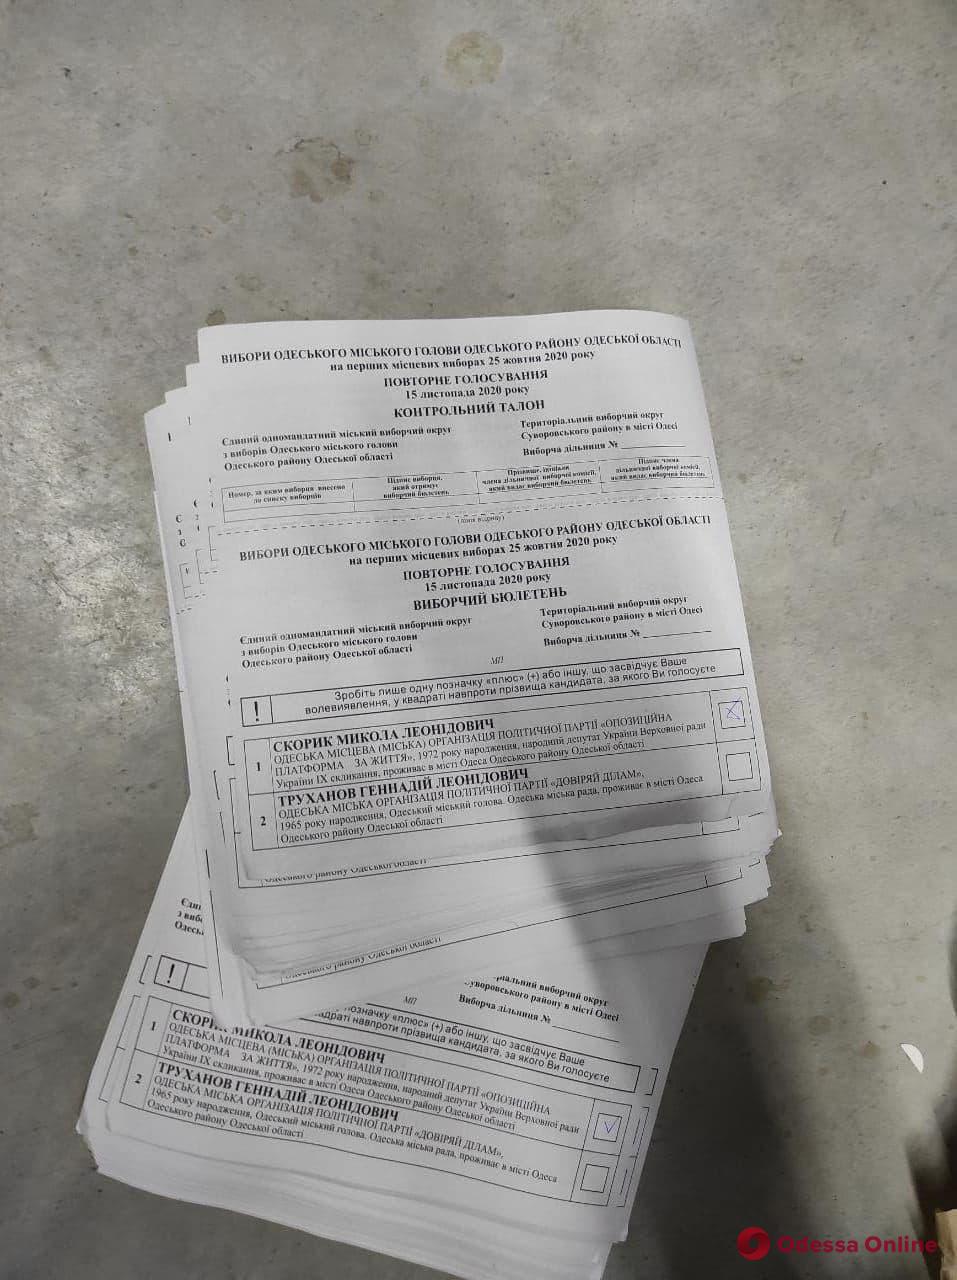 В офисе соратника Скорика СБУ нашла поддельные бюллетени для выборов мэра